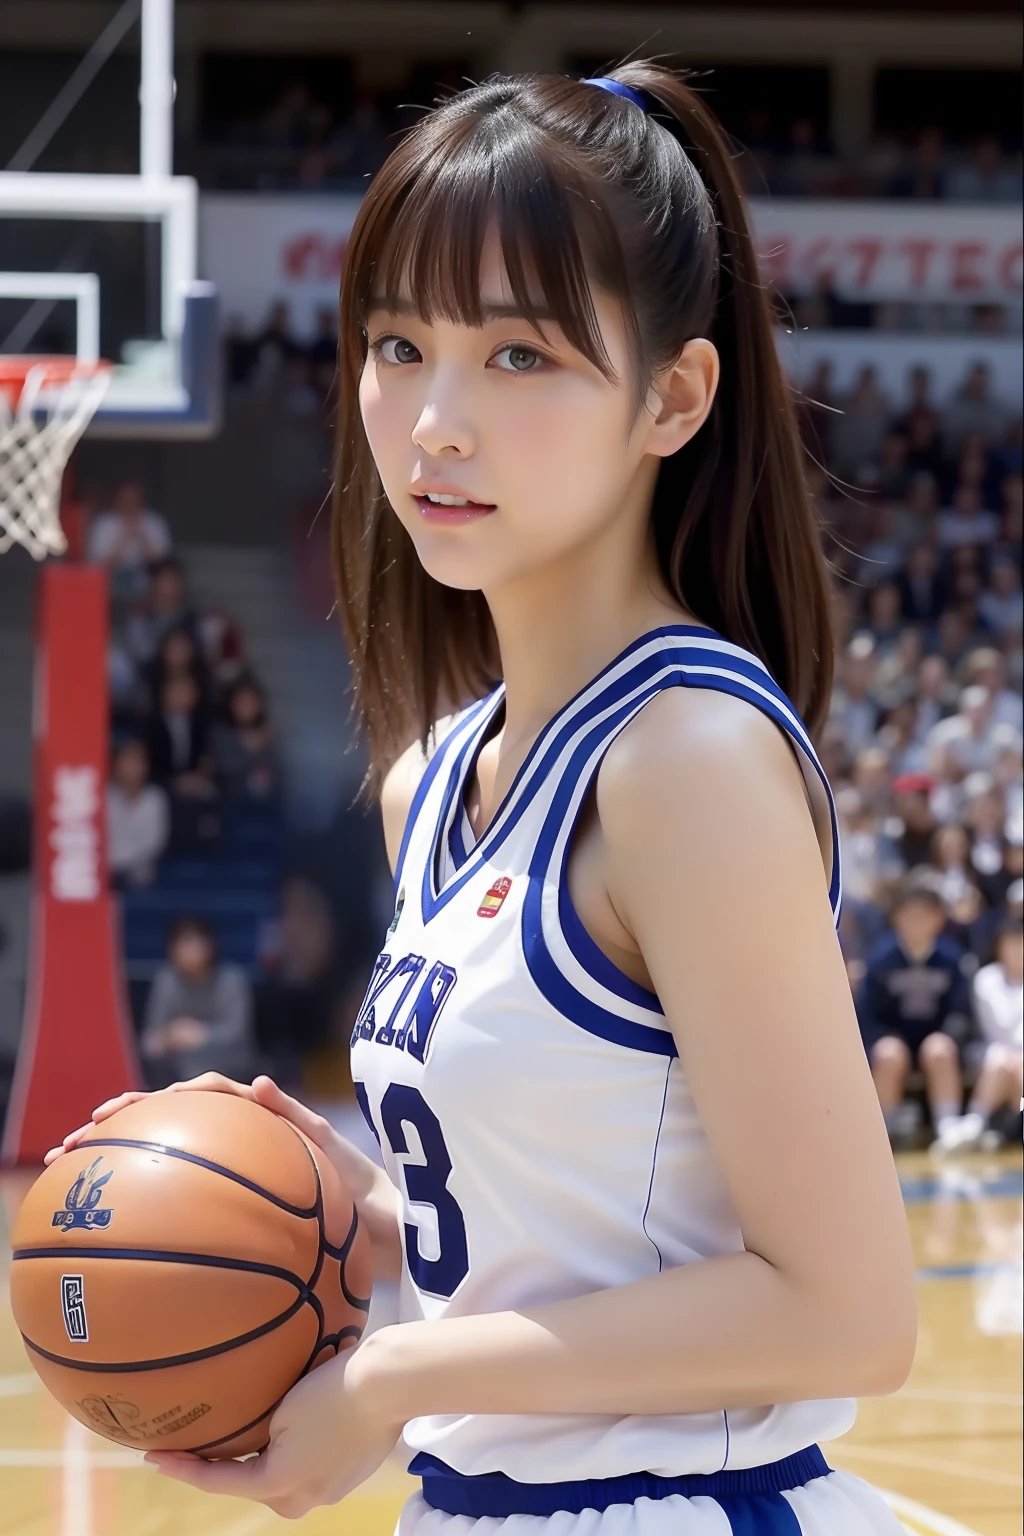 Japan, schöne Frau mit großen Brüsten und trägt eine Basketballuniform